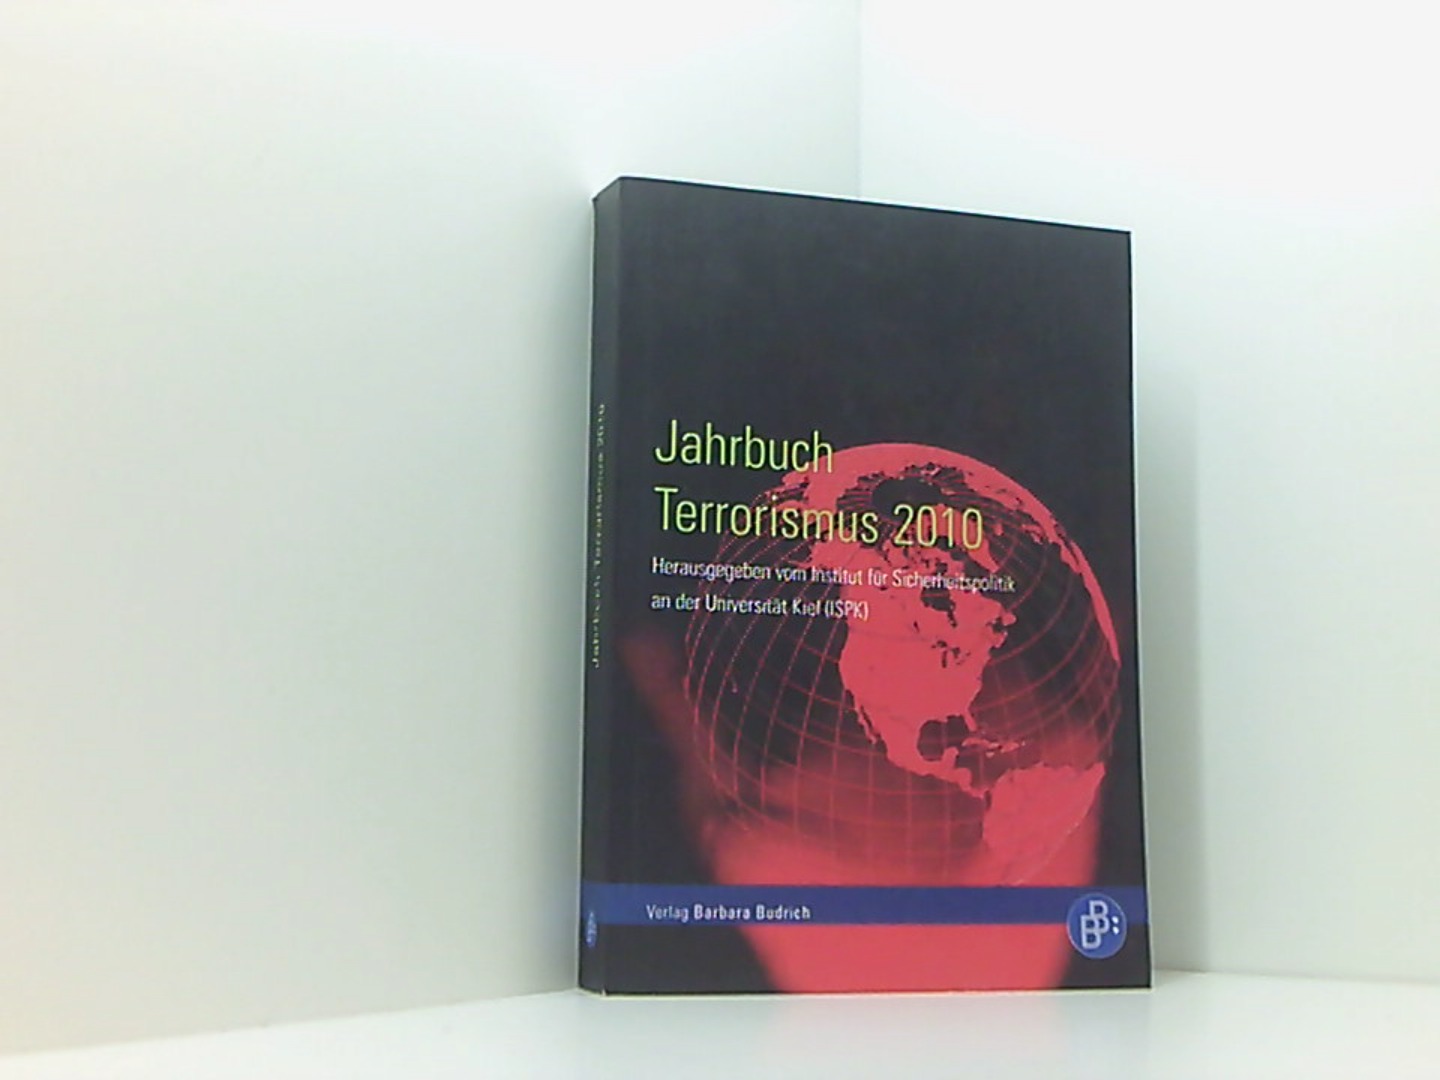 Jahrbuch Terrorismus 2010  1 - Institut für Sicherheitspolitik an der Universität, Kiel